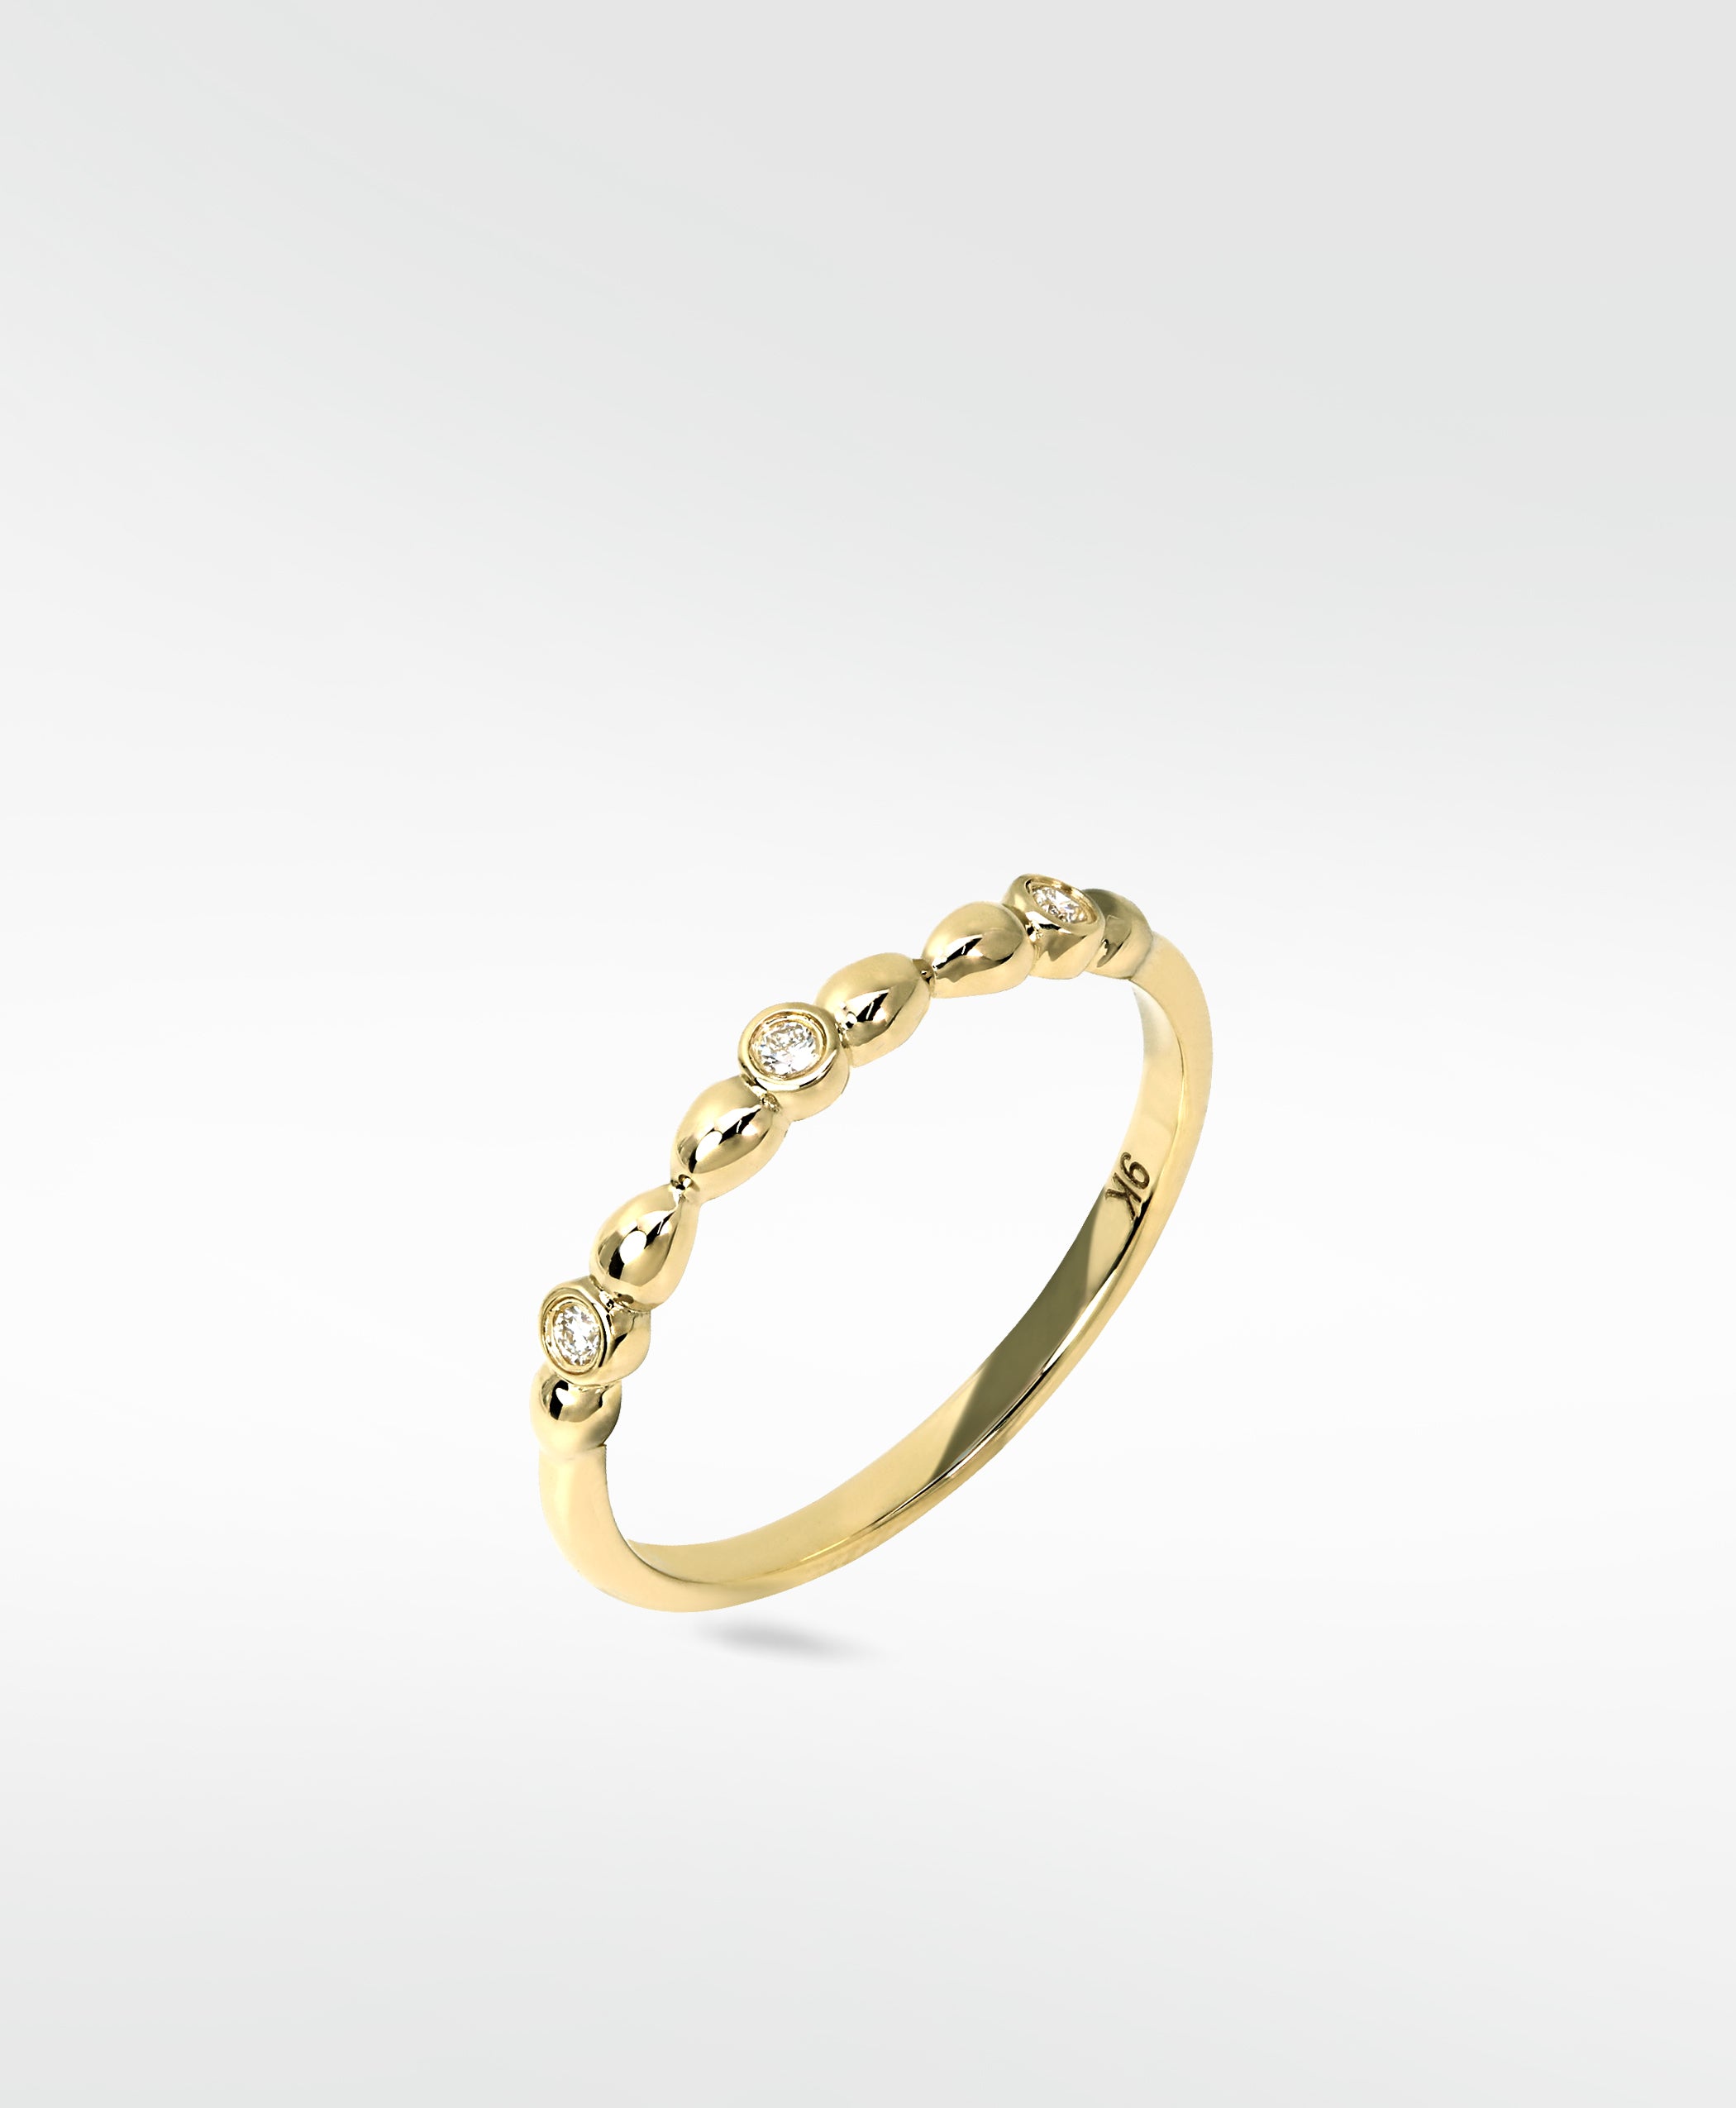 Harvest Gold Ring